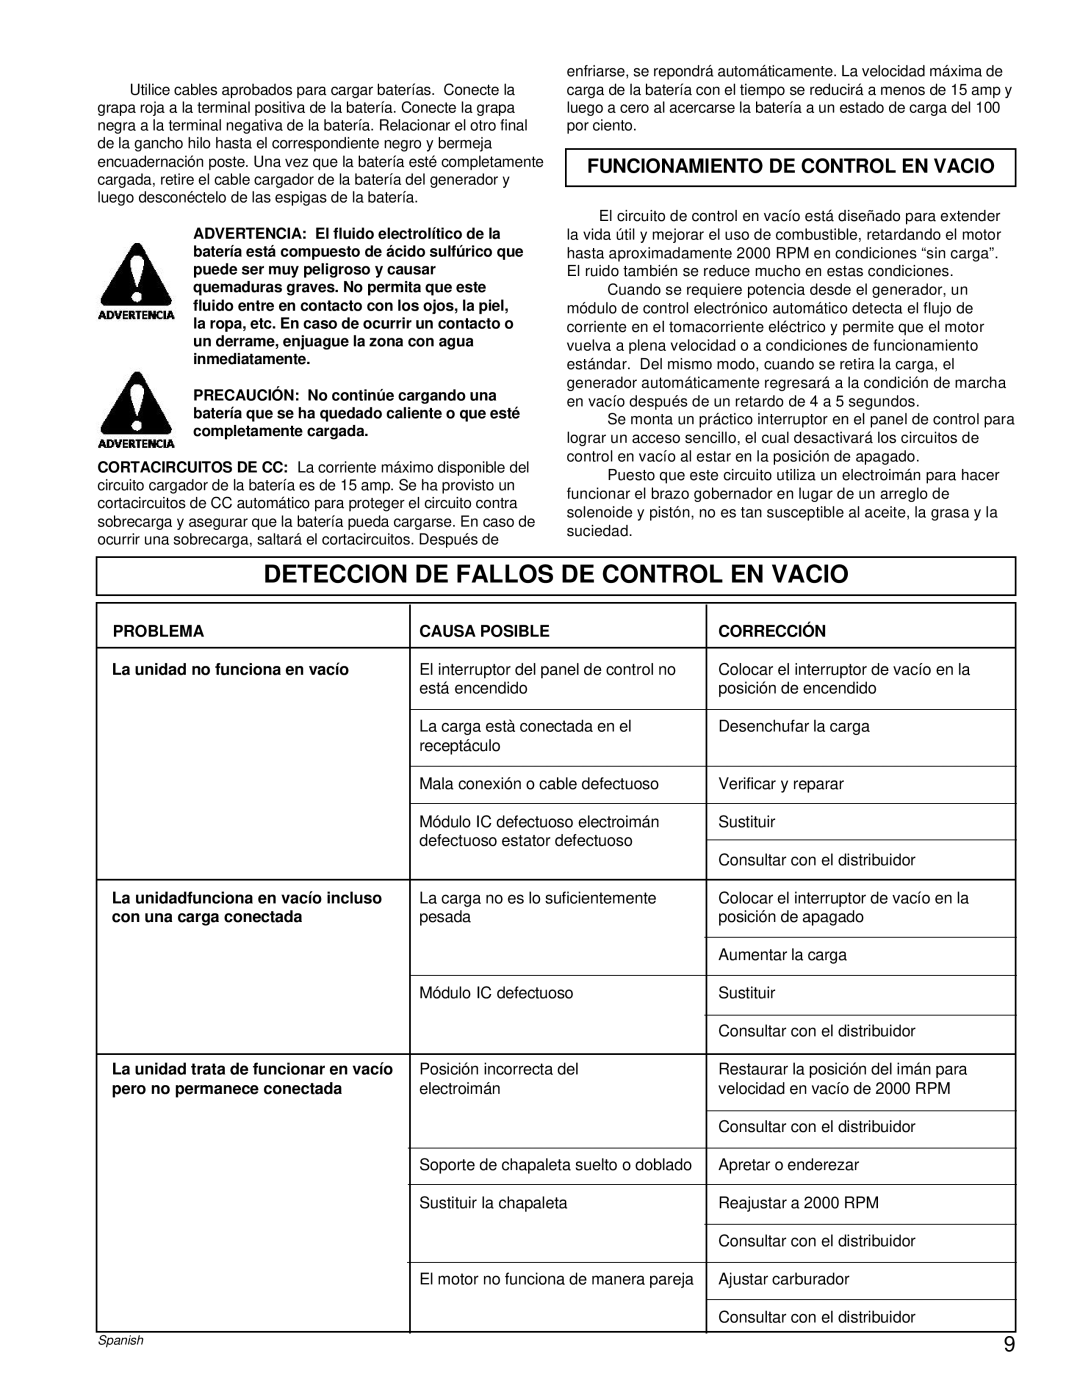 Powermate PL0496504.17 manual Deteccion De Fallos De Control En Vacio, Funcionamiento De Control En Vacio 